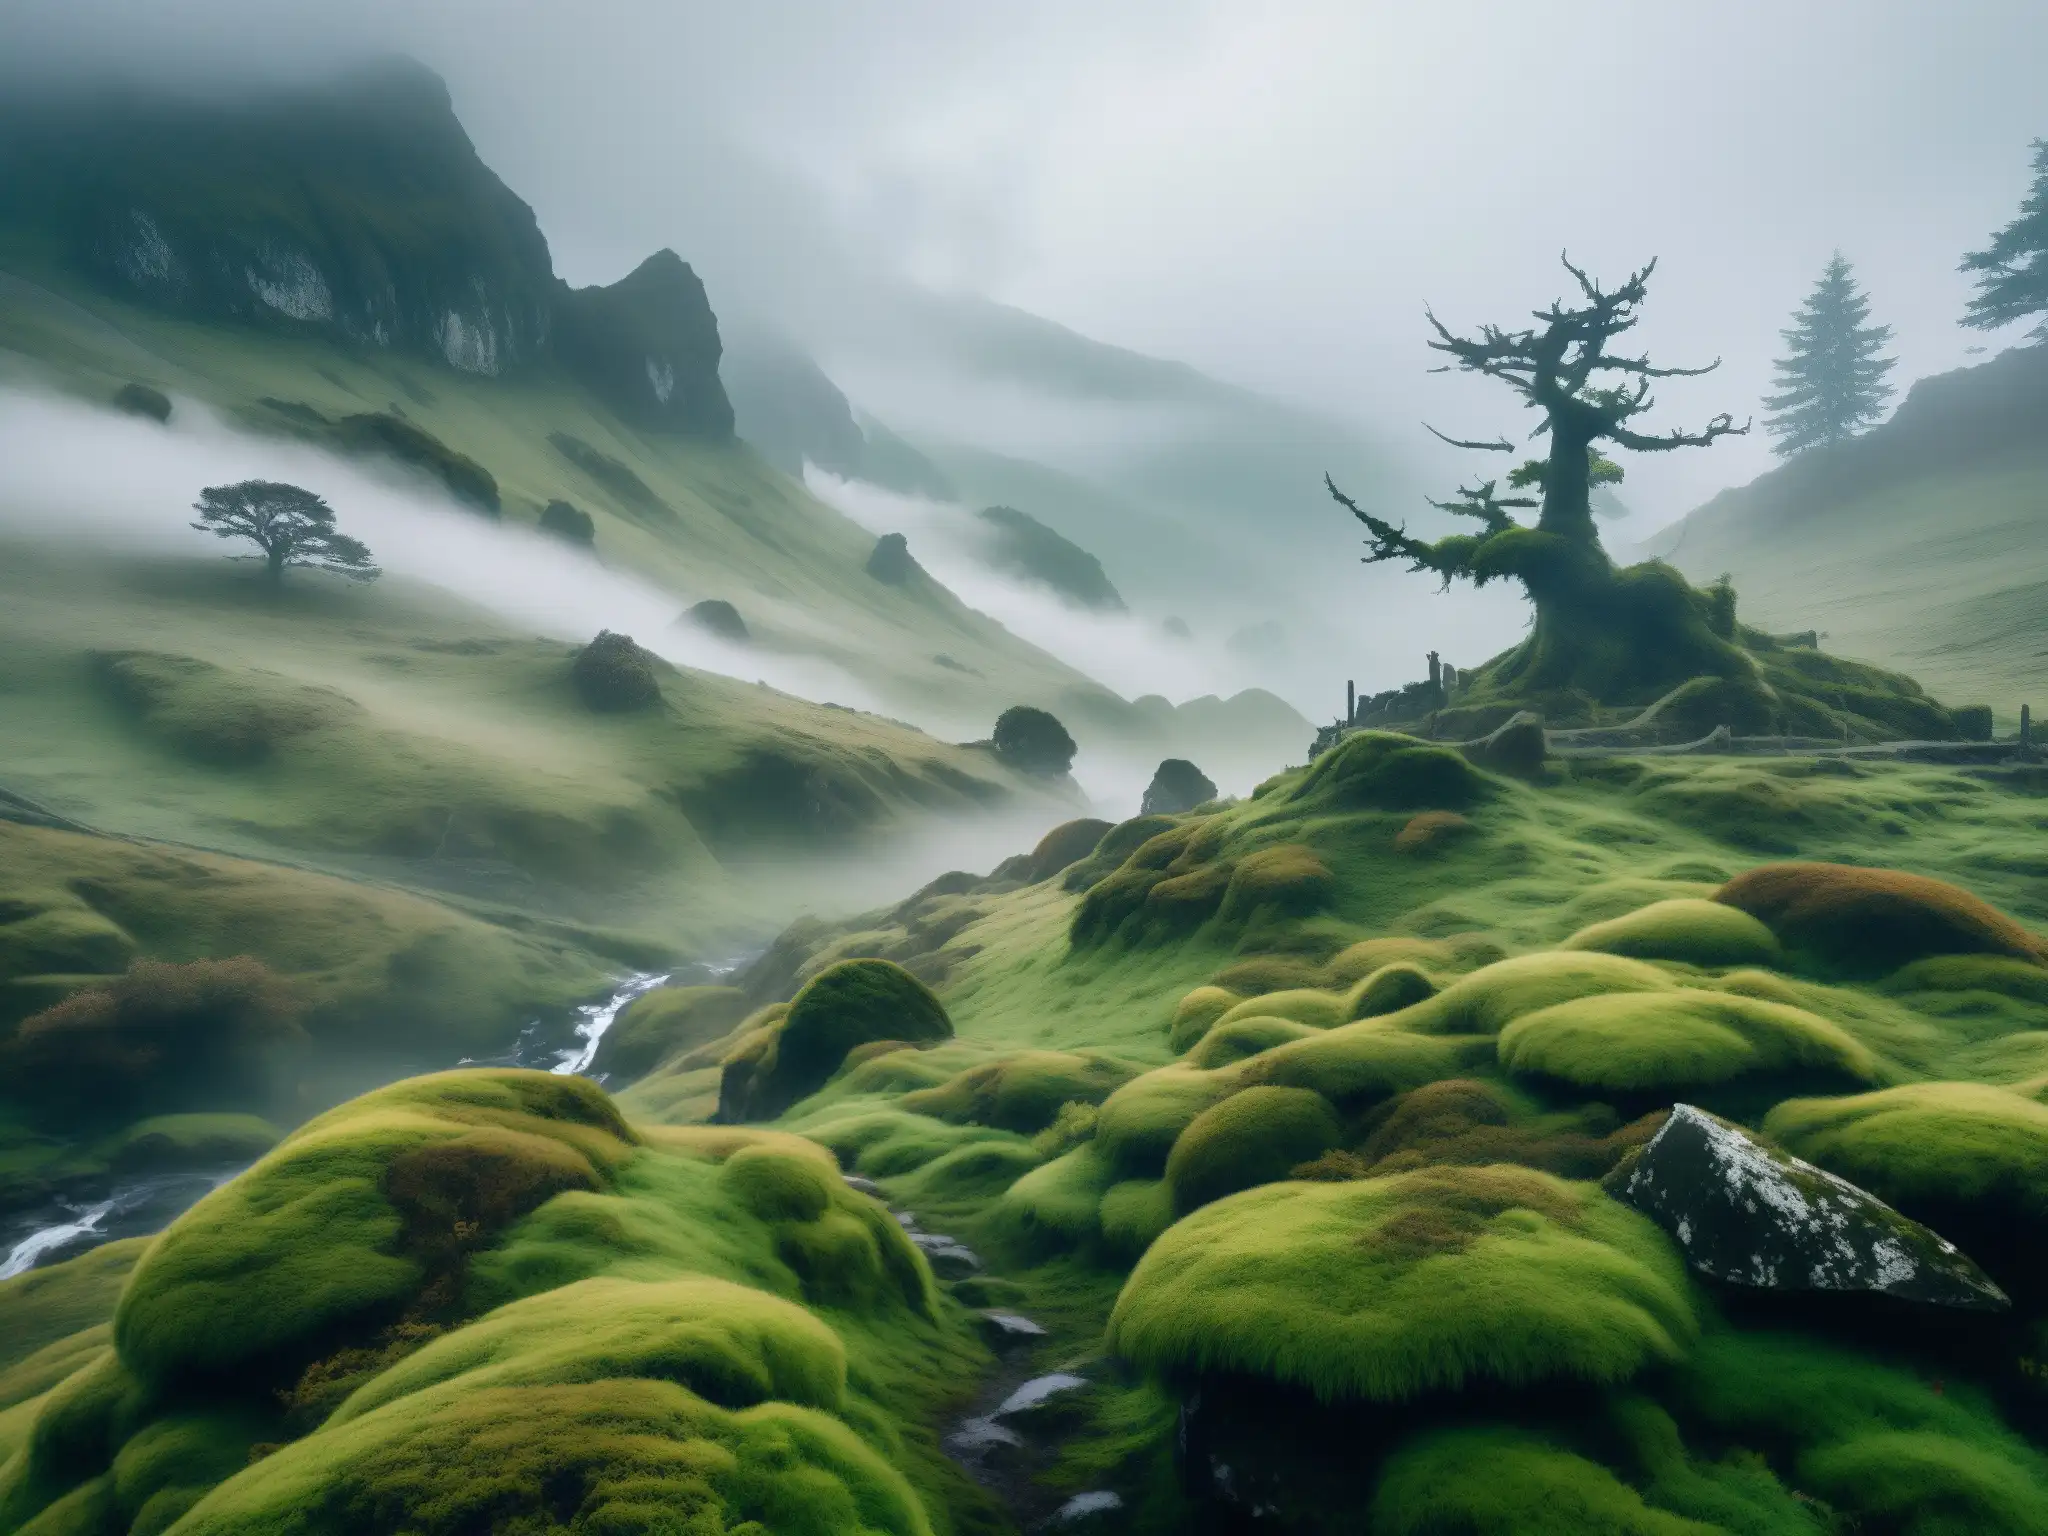 Un paisaje montañoso envuelto en niebla, con árboles retorcidos y un aura de misterio